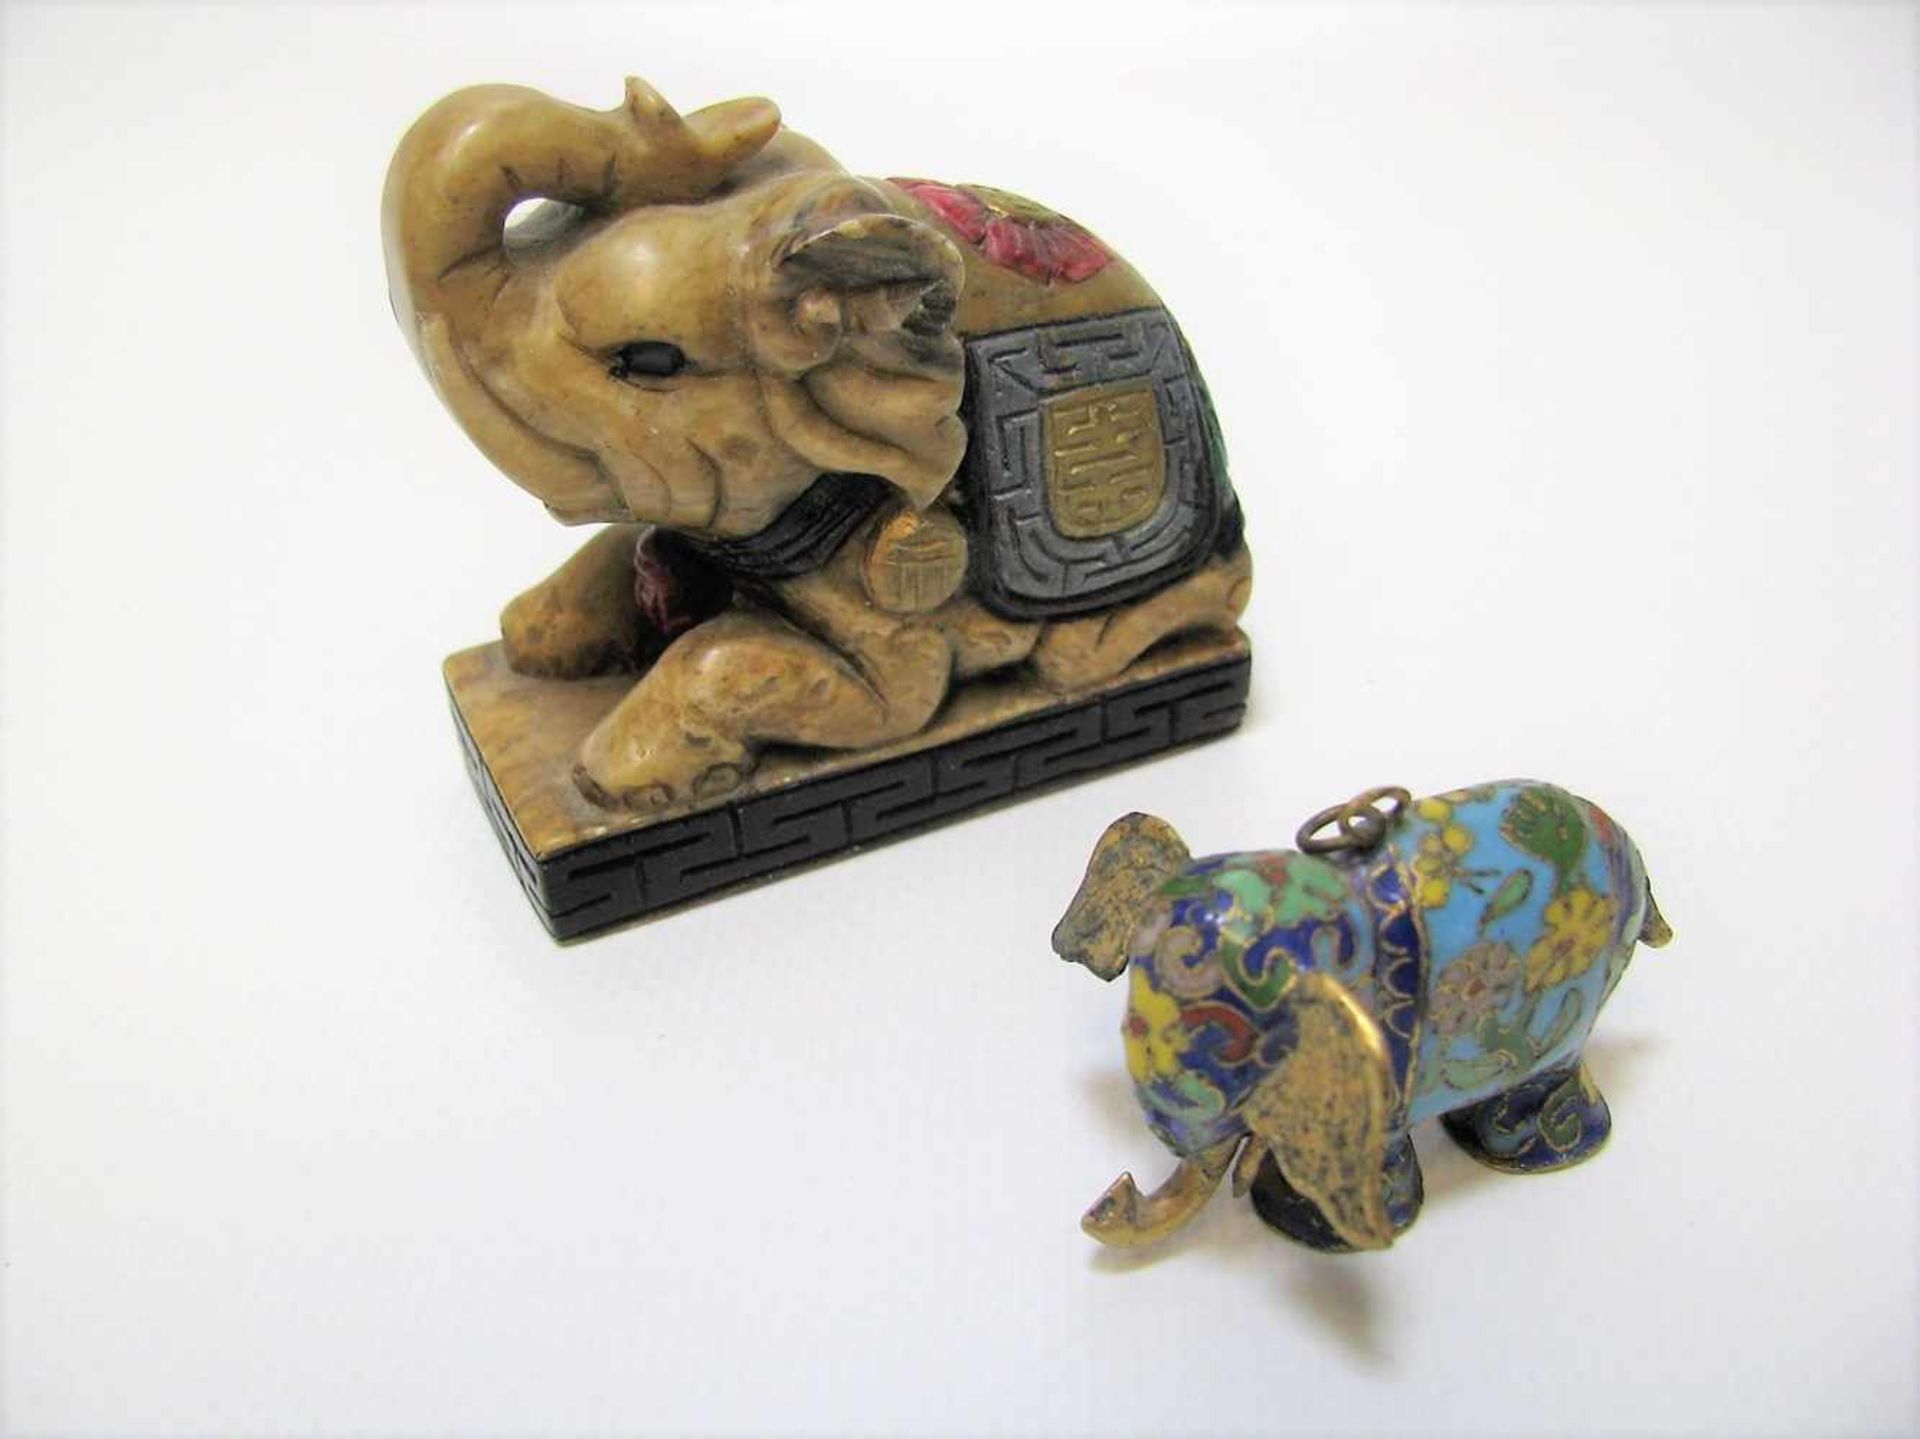 2 Elefanten, Asien, Cloisonné und Speckstein beschnitzt, h 3,5/6,5 cm.